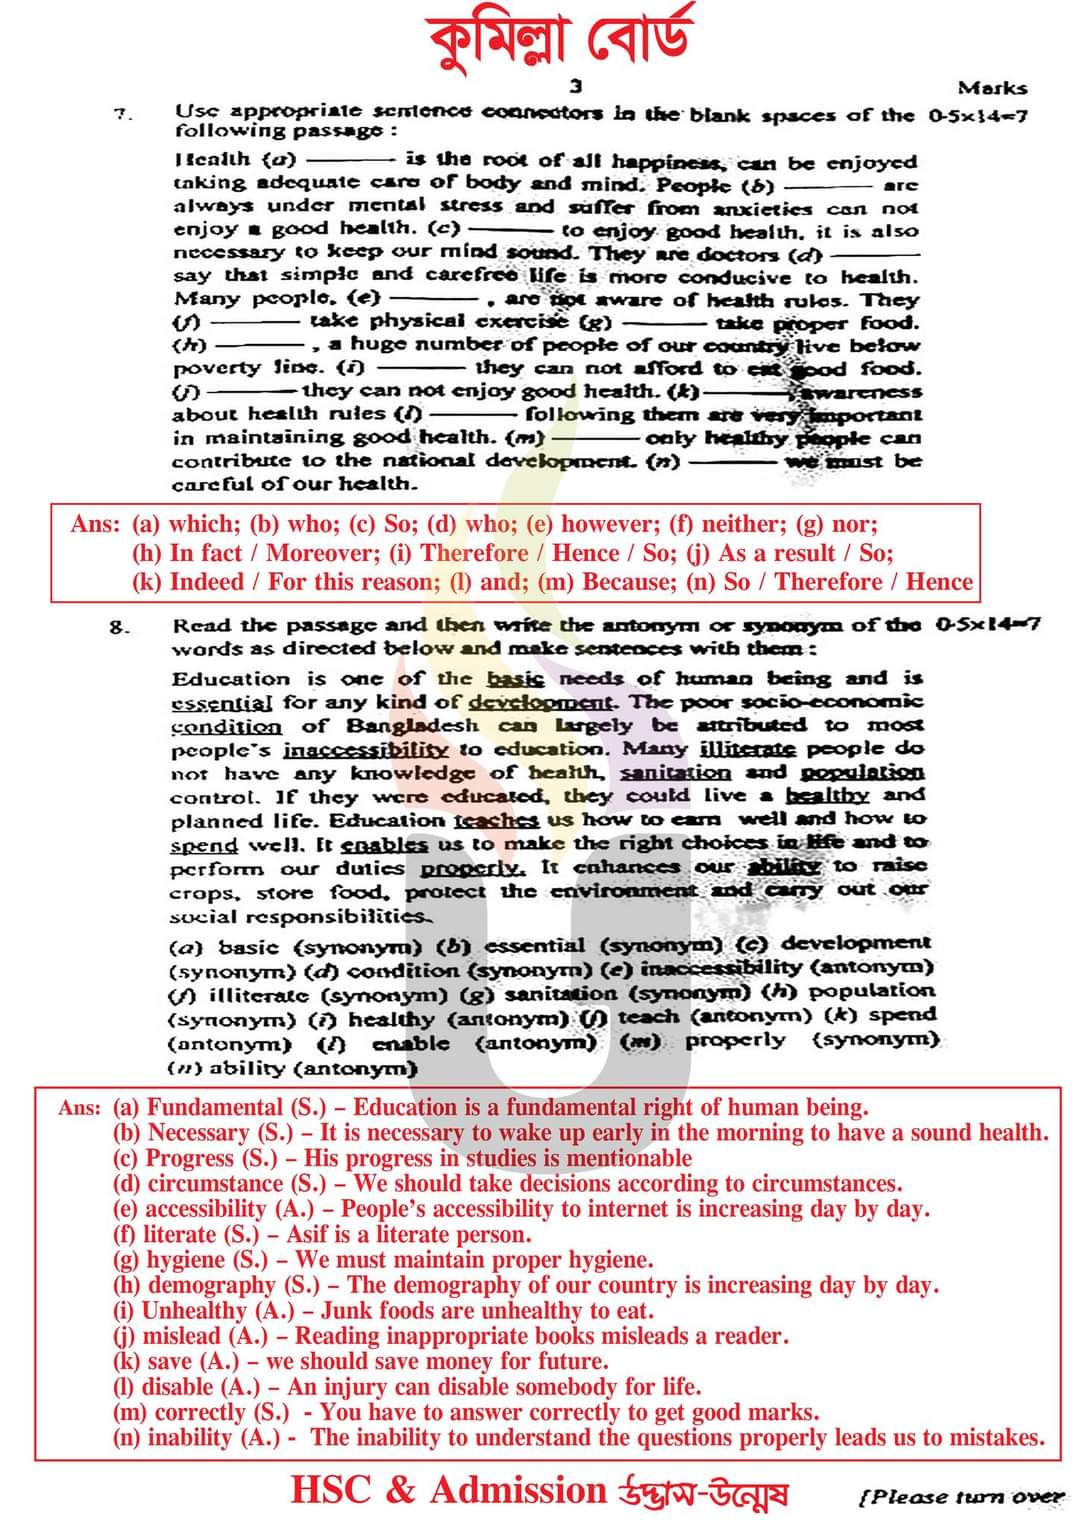 কুমিল্লা বোর্ড এইচএসসি ইংরেজি ২য় পএ বহুনির্বাচনি প্রশ্ন সমাধান ২০২৩ | এইচএসসি ইংরেজি ২য় পএ প্রশ্ন সমাধান ২০২৩ | Comilla  broad hsc English 2nd paper exam Mcq Solution 2023